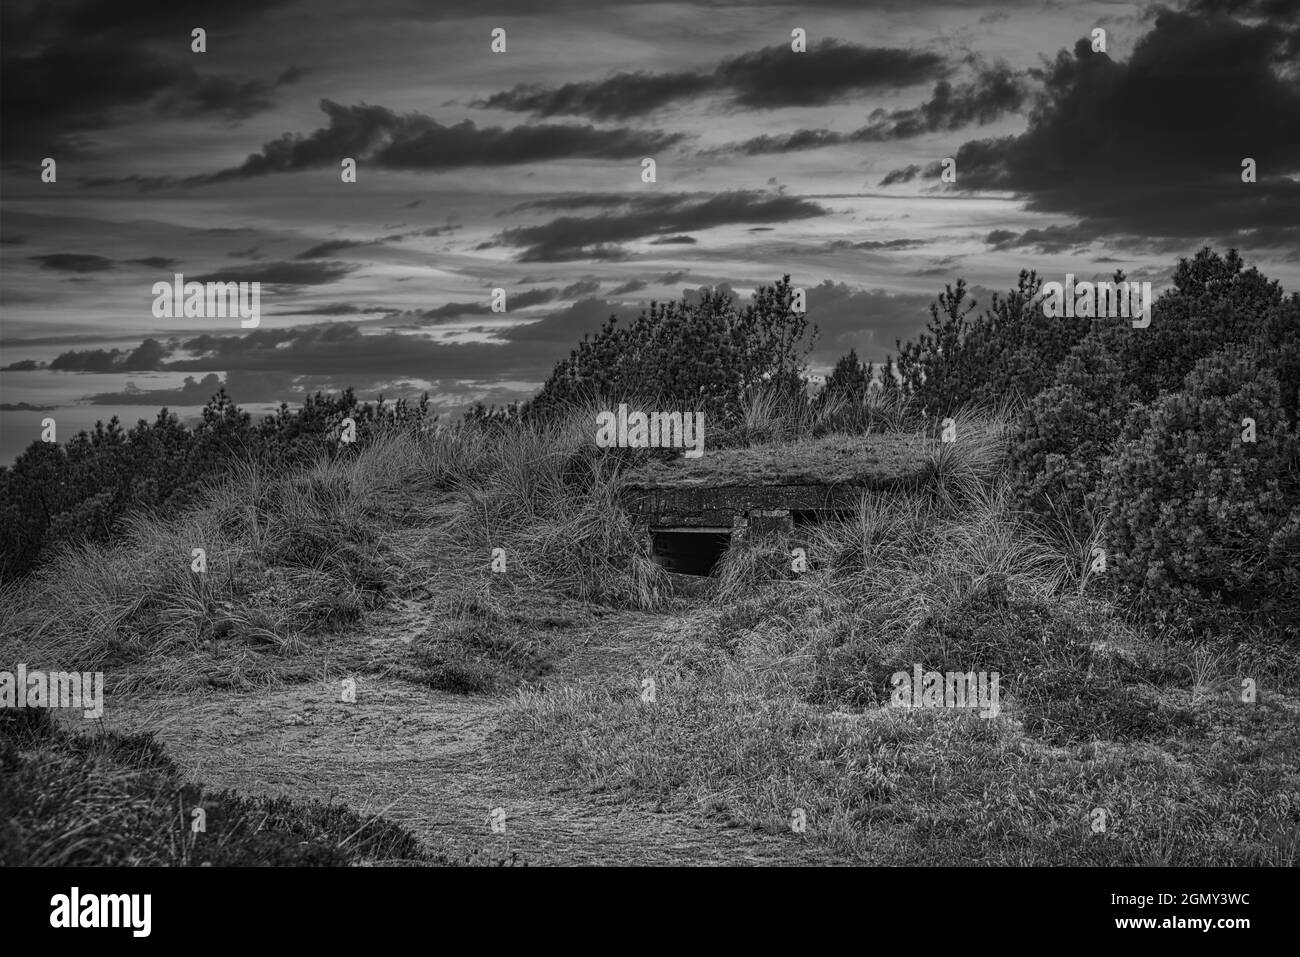 Búnker en las dunas de Dinamarca tomada en blanco y negro. Estos bunkers fueron construidos durante la Segunda Guerra Mundial. Reliquias de un tiempo oscuro Foto de stock